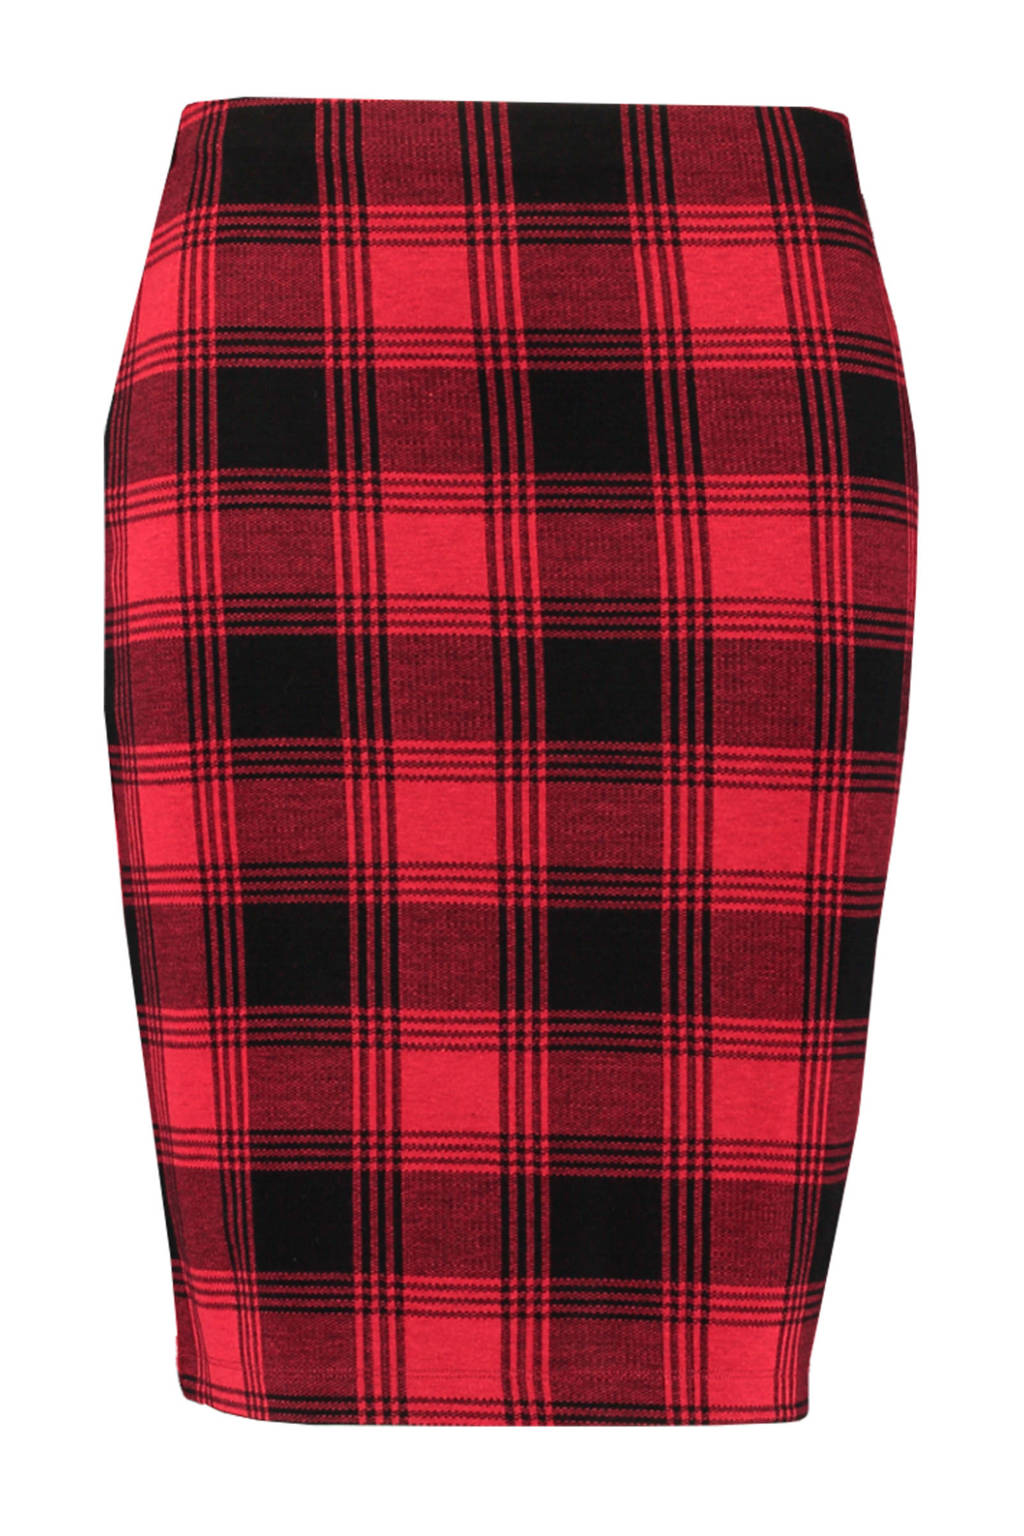 Stewart Island Vriend verdrietig MS Mode geruite rok rood/zwart | wehkamp